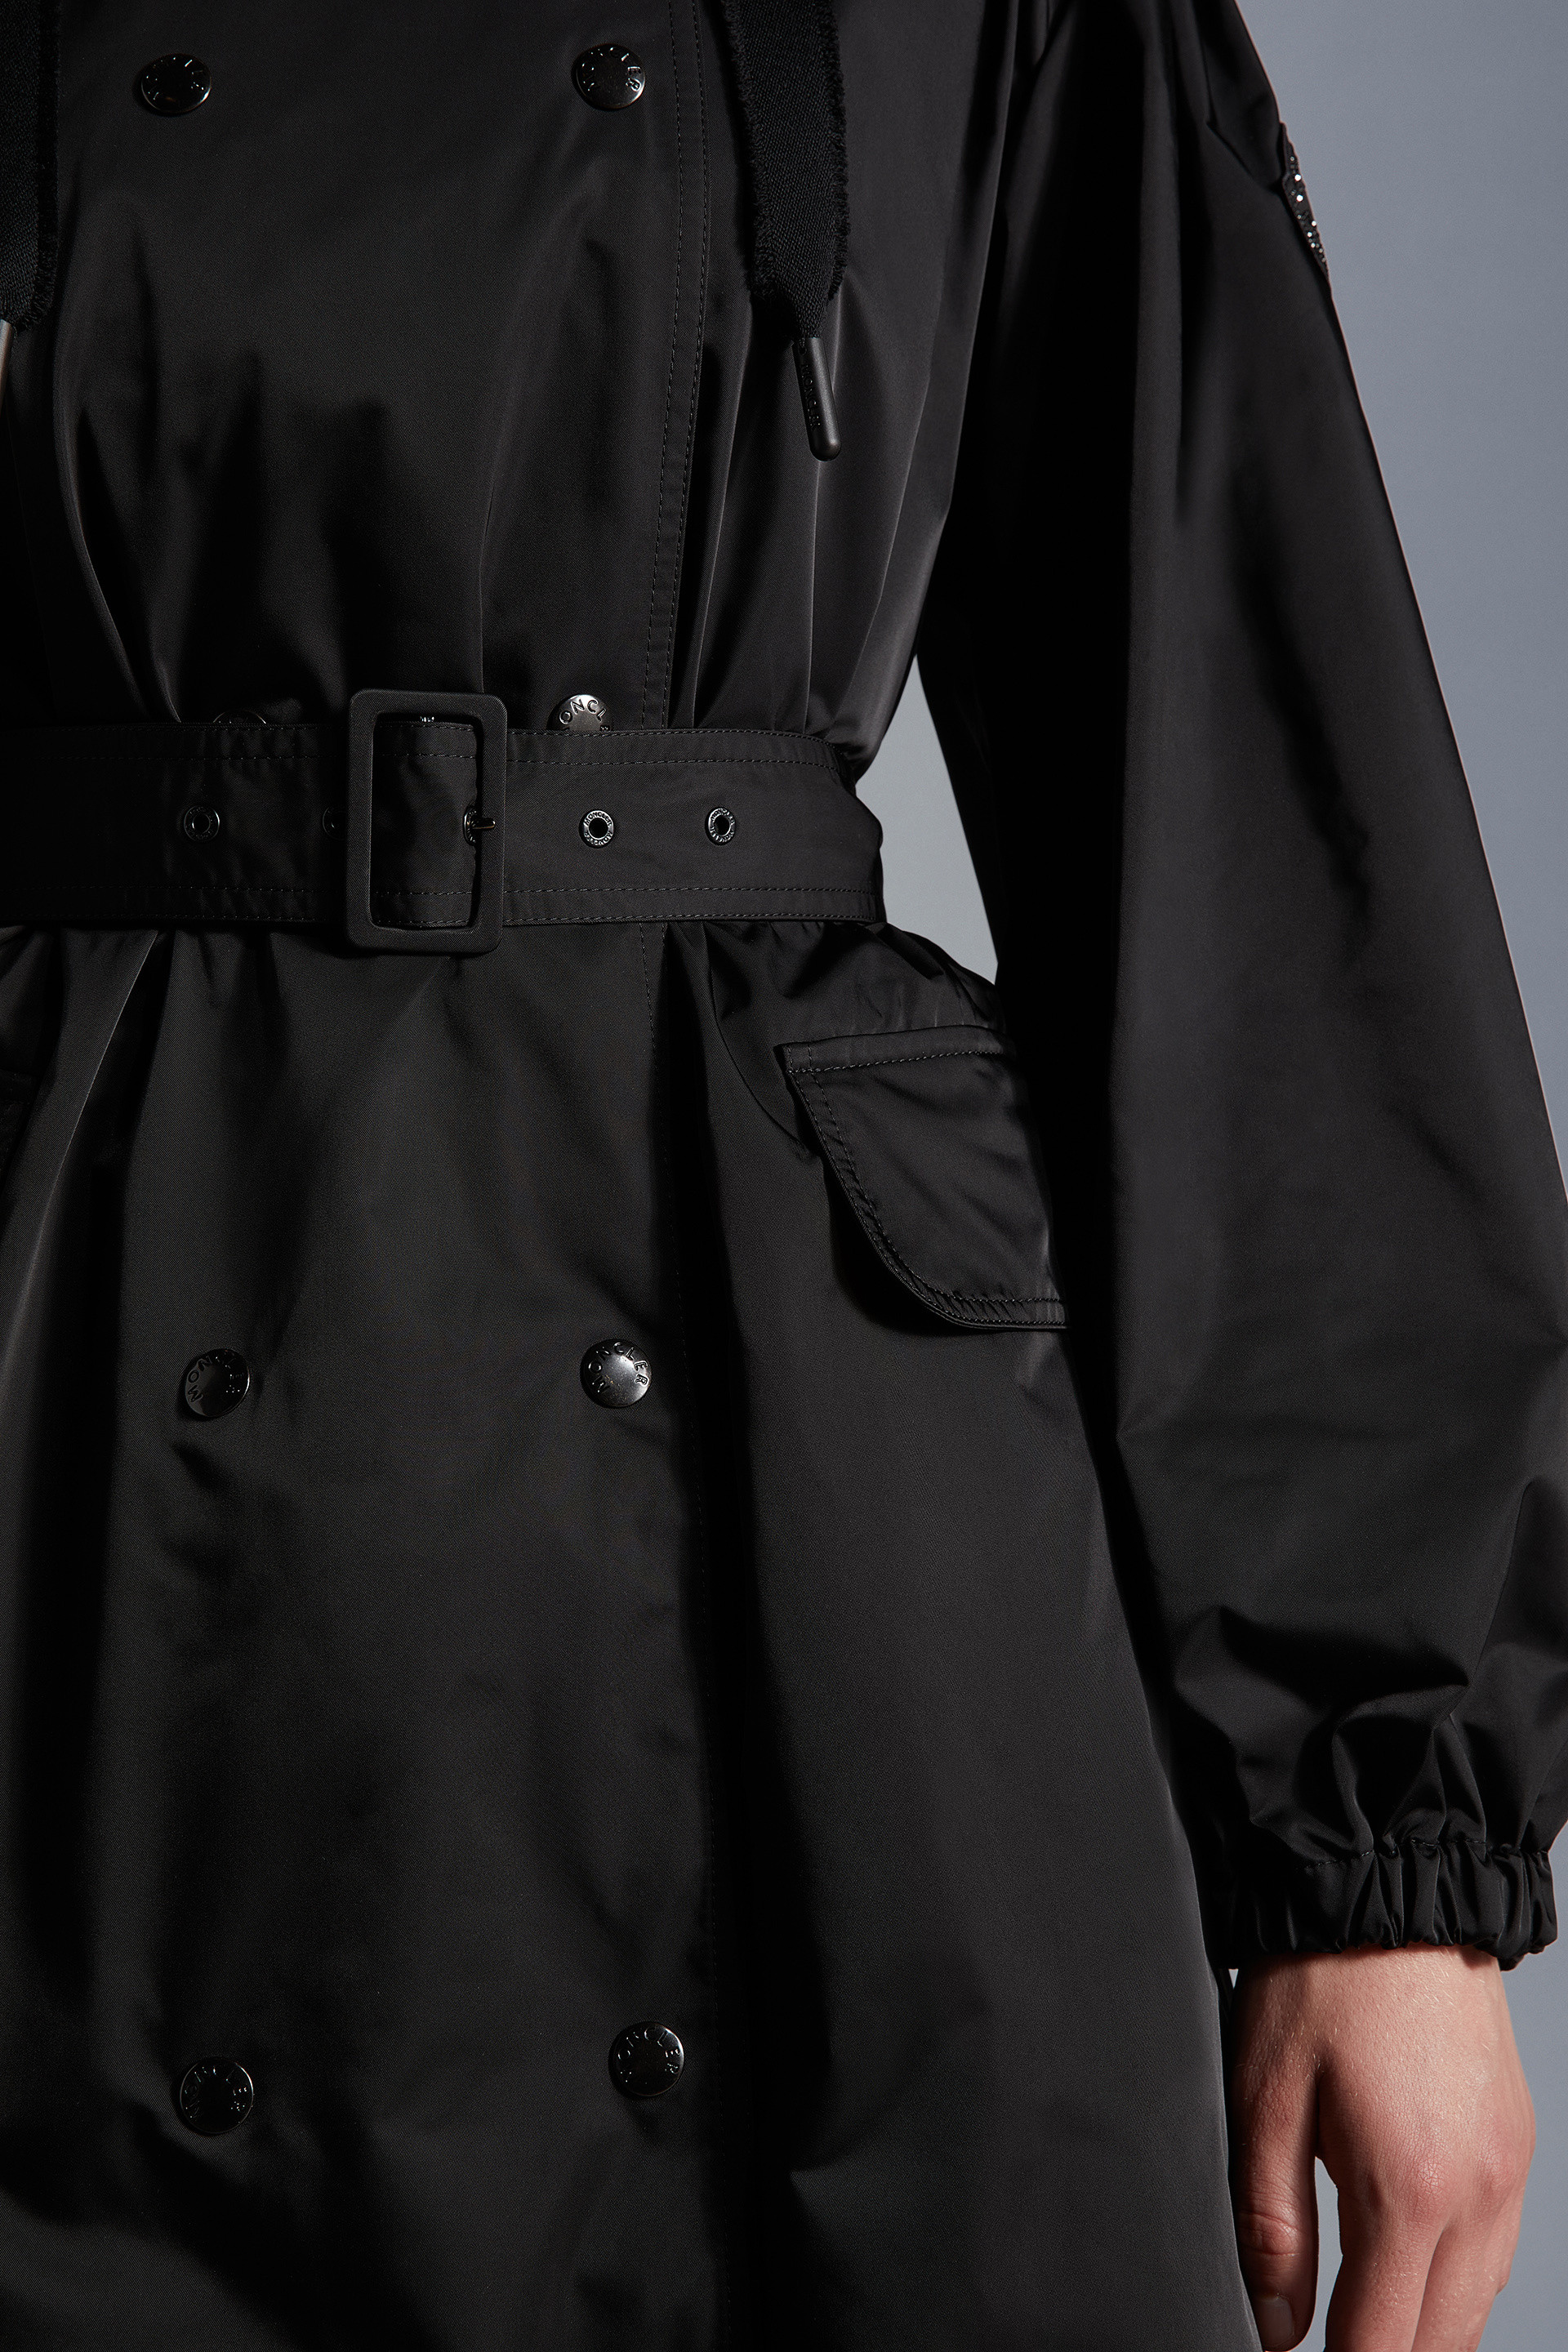 Trench coat tamarissiere Synthétique Moncler en coloris Noir Femme Vêtements Manteaux Imperméables et trench coats 